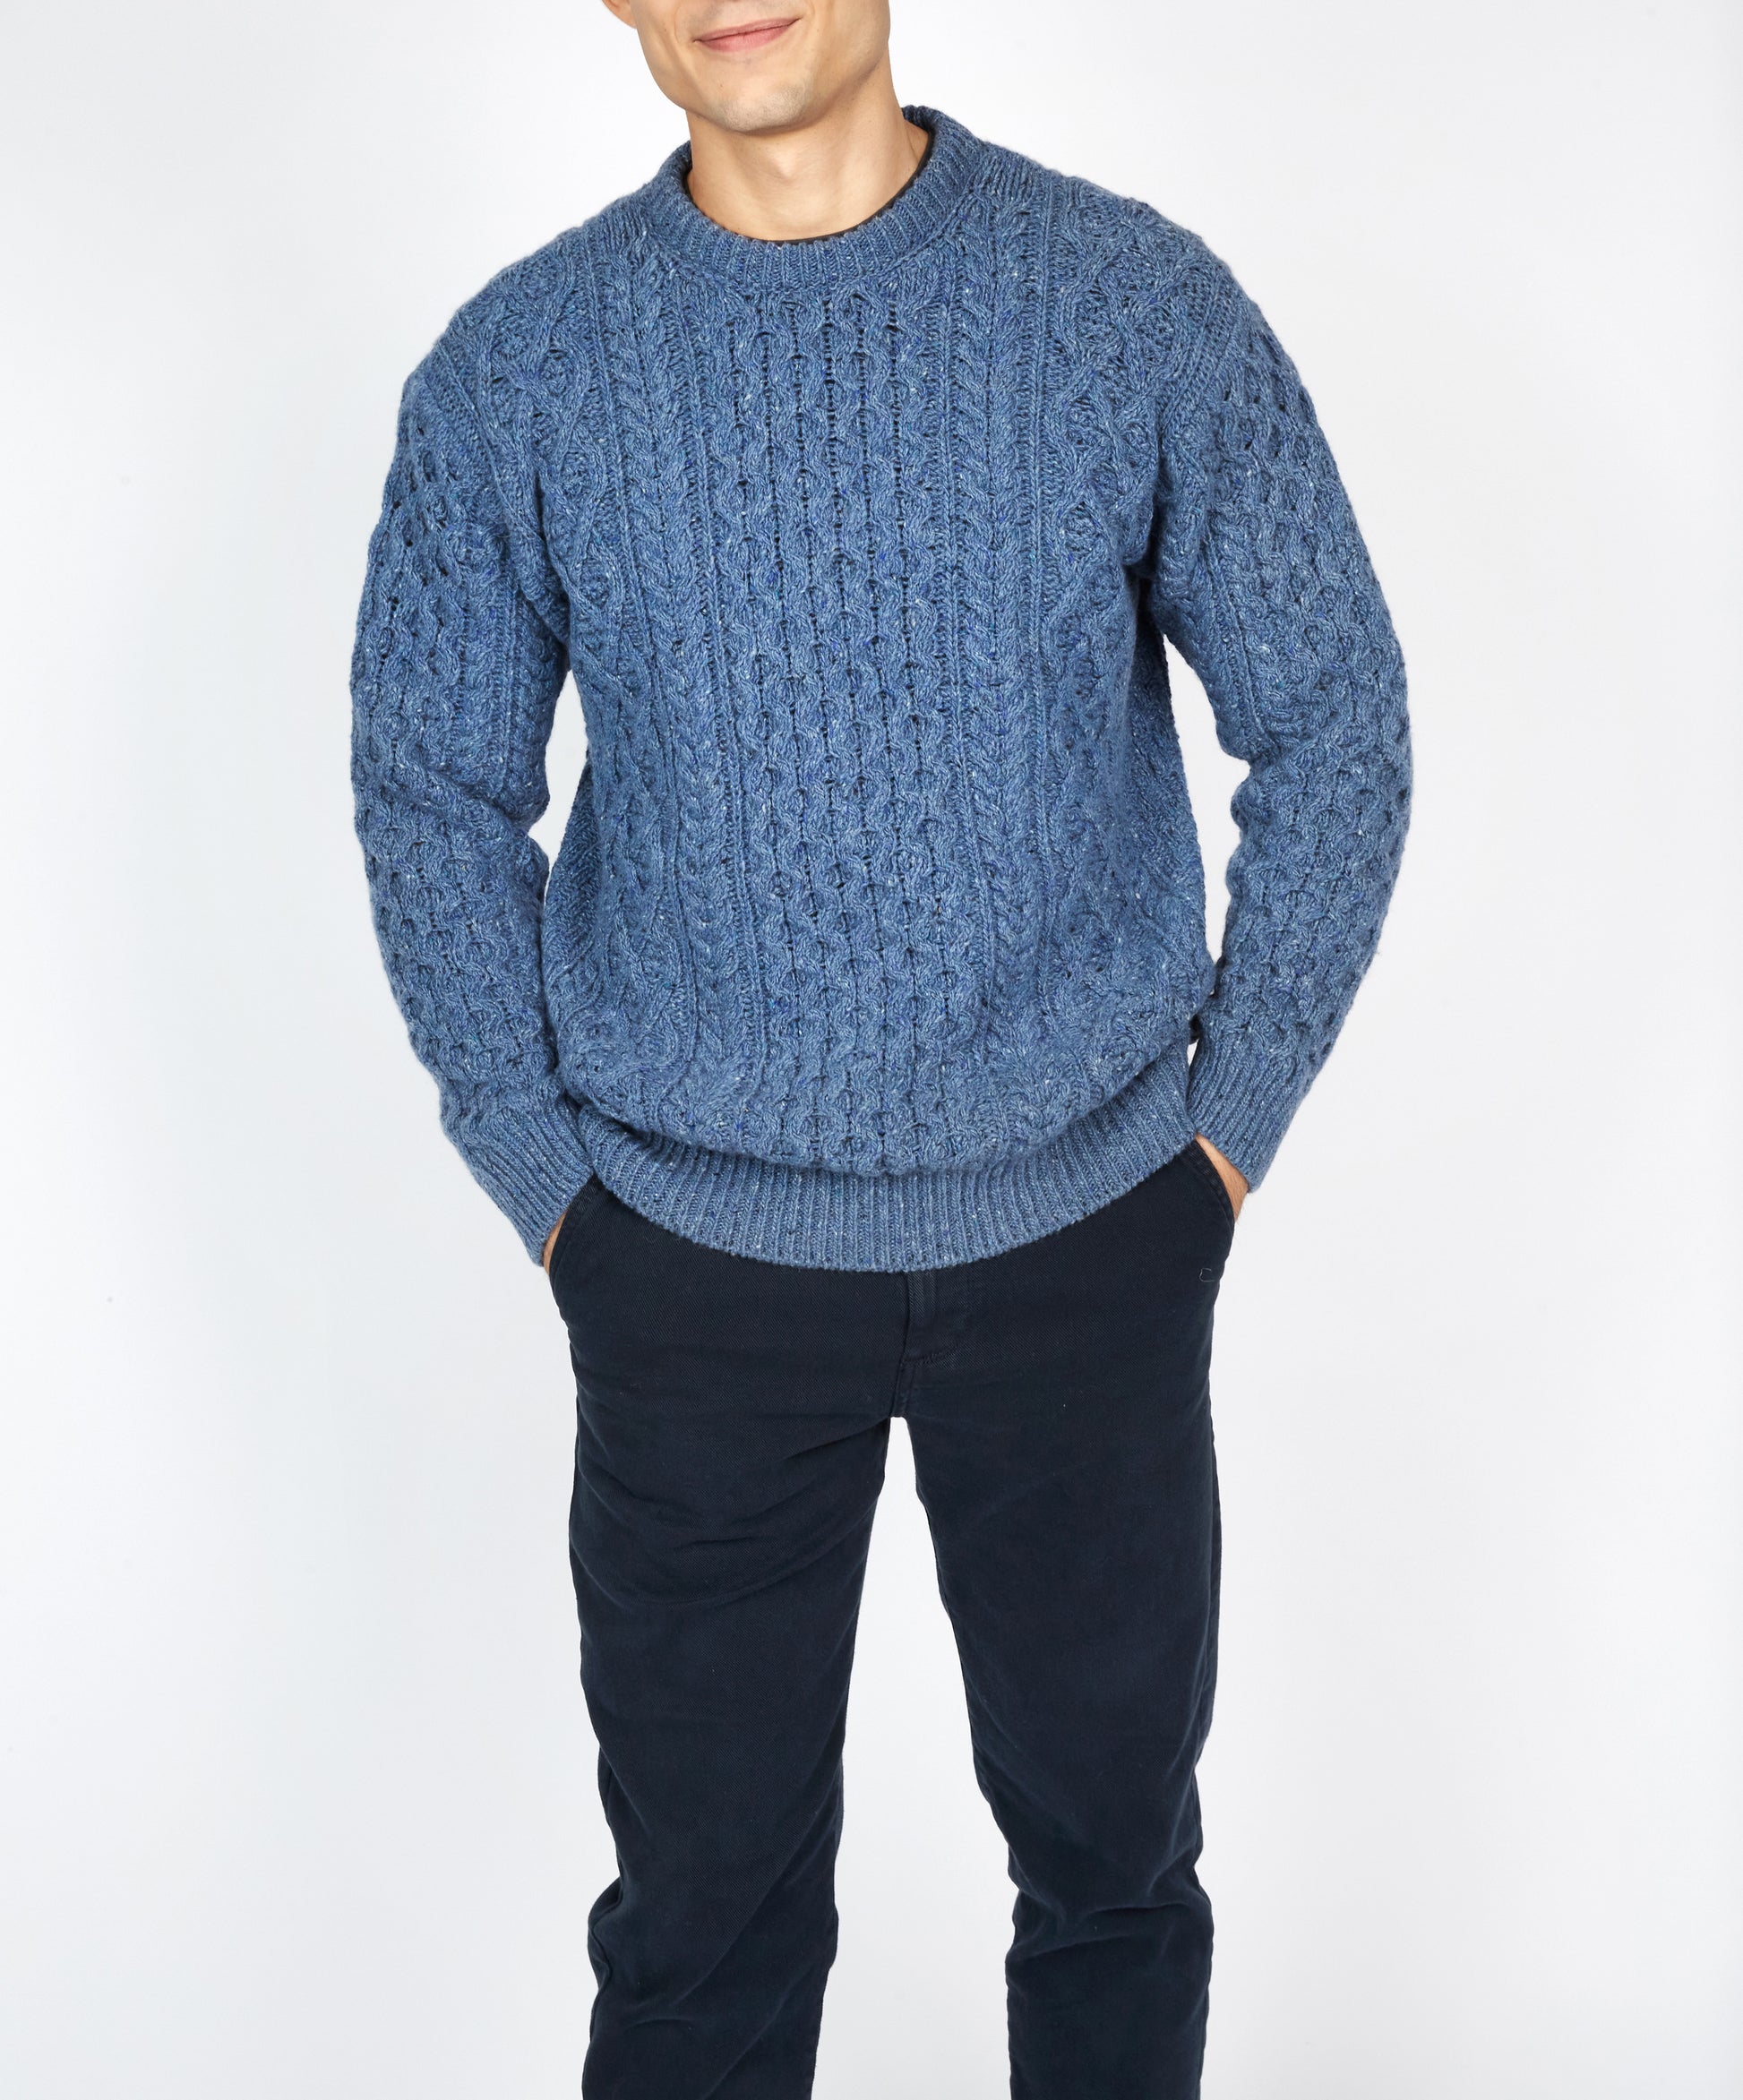 IrelandsEye Knitwear Carraig Luxe Aran Sweater Blue Ocean